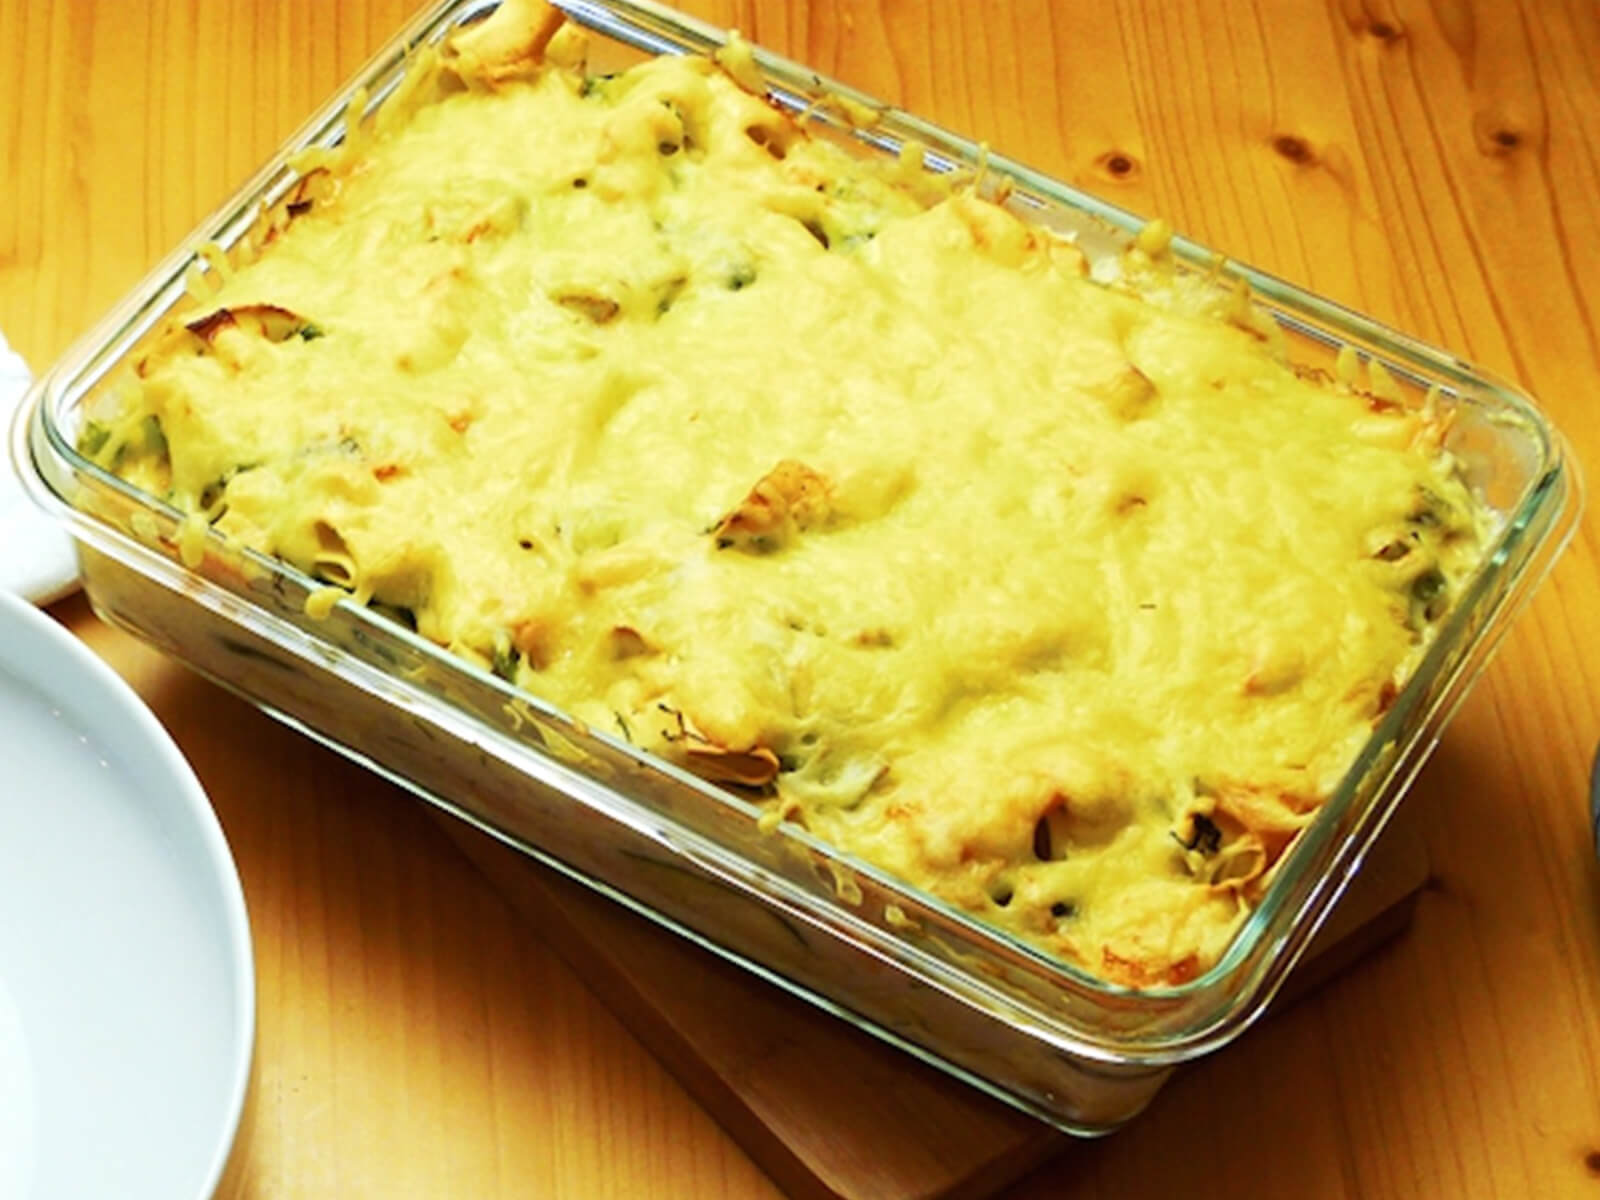 Nudelrezept von Tress: Ofenform aus Glas gefüllt mit Nudeln, Räucherlachs, Zucchini und mit Käse überbacken